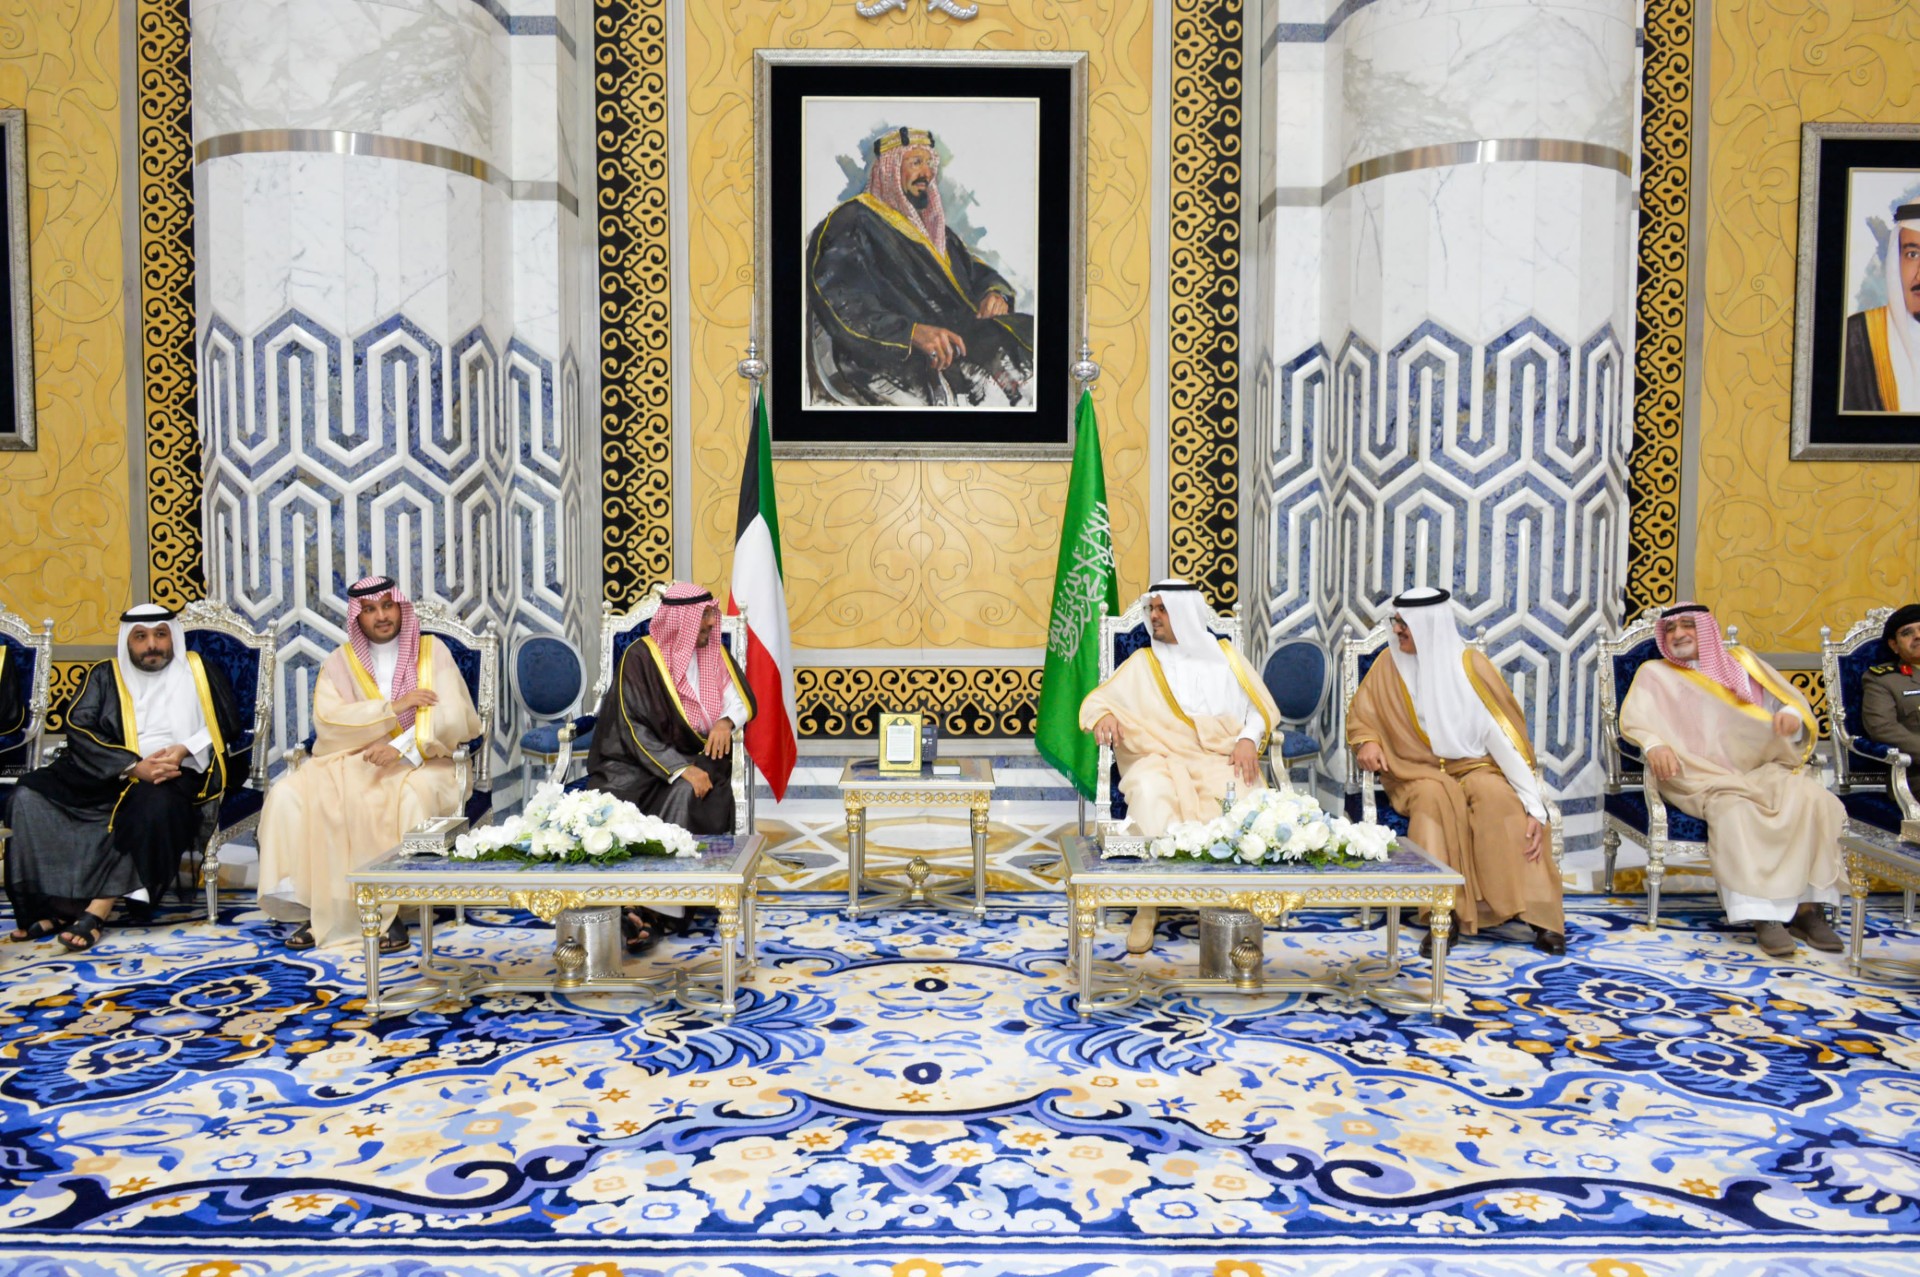 سمو الشيخ الدكتور محمد صباح السالم الصباح رئيس مجلس الوزراء يصل إلى جدة في زيارة رسمية للمملكة العربية السعودية